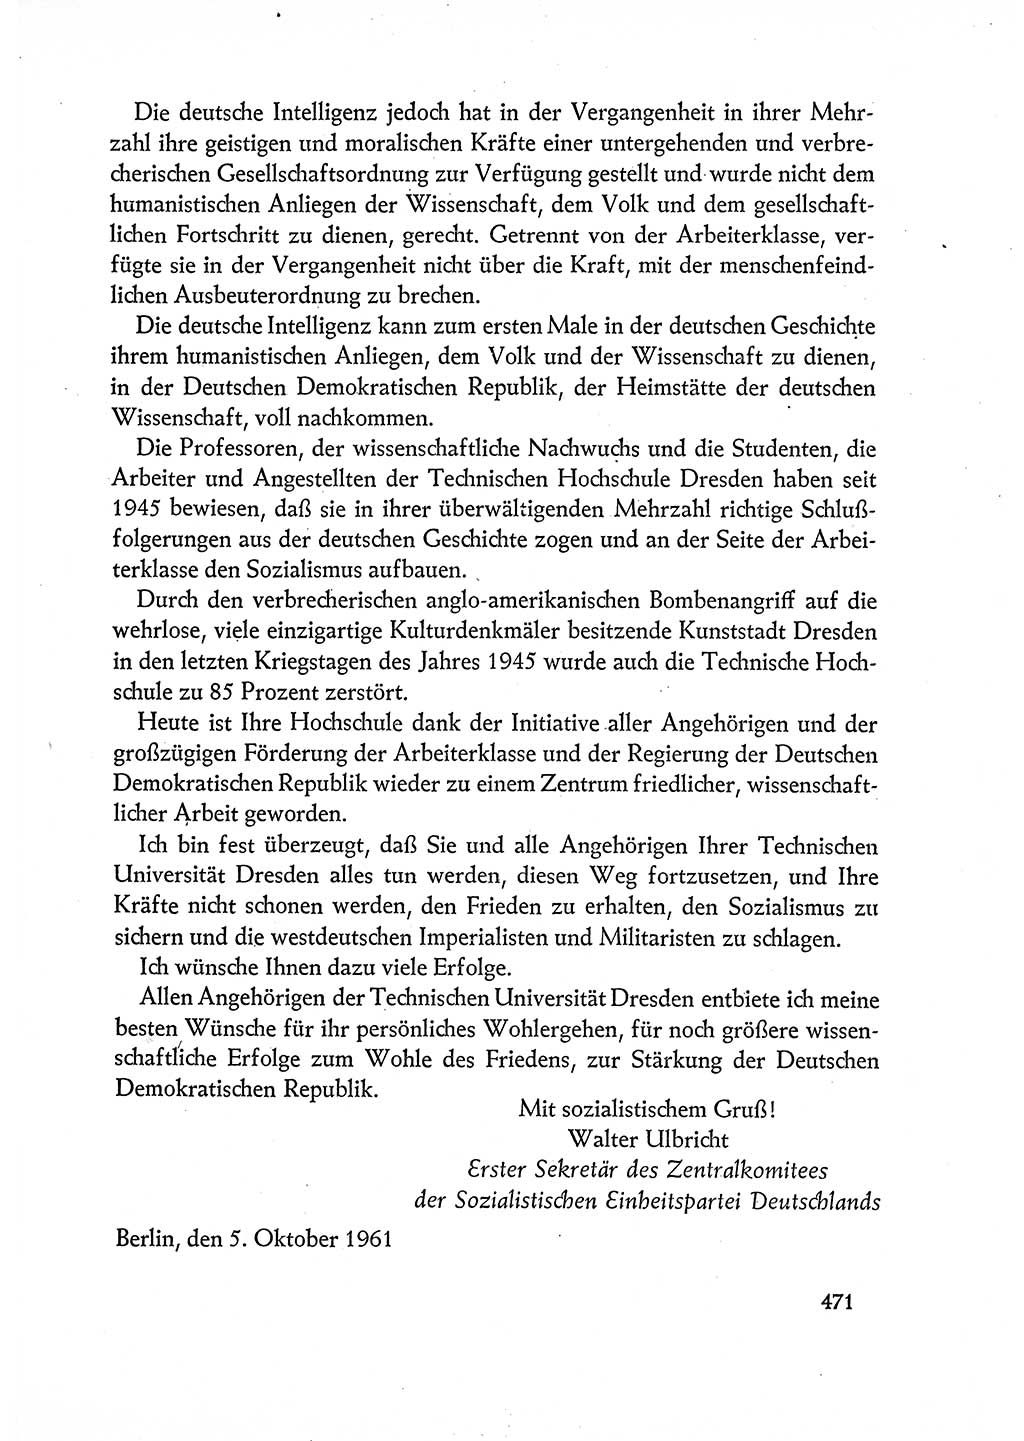 Dokumente der Sozialistischen Einheitspartei Deutschlands (SED) [Deutsche Demokratische Republik (DDR)] 1960-1961, Seite 471 (Dok. SED DDR 1960-1961, S. 471)